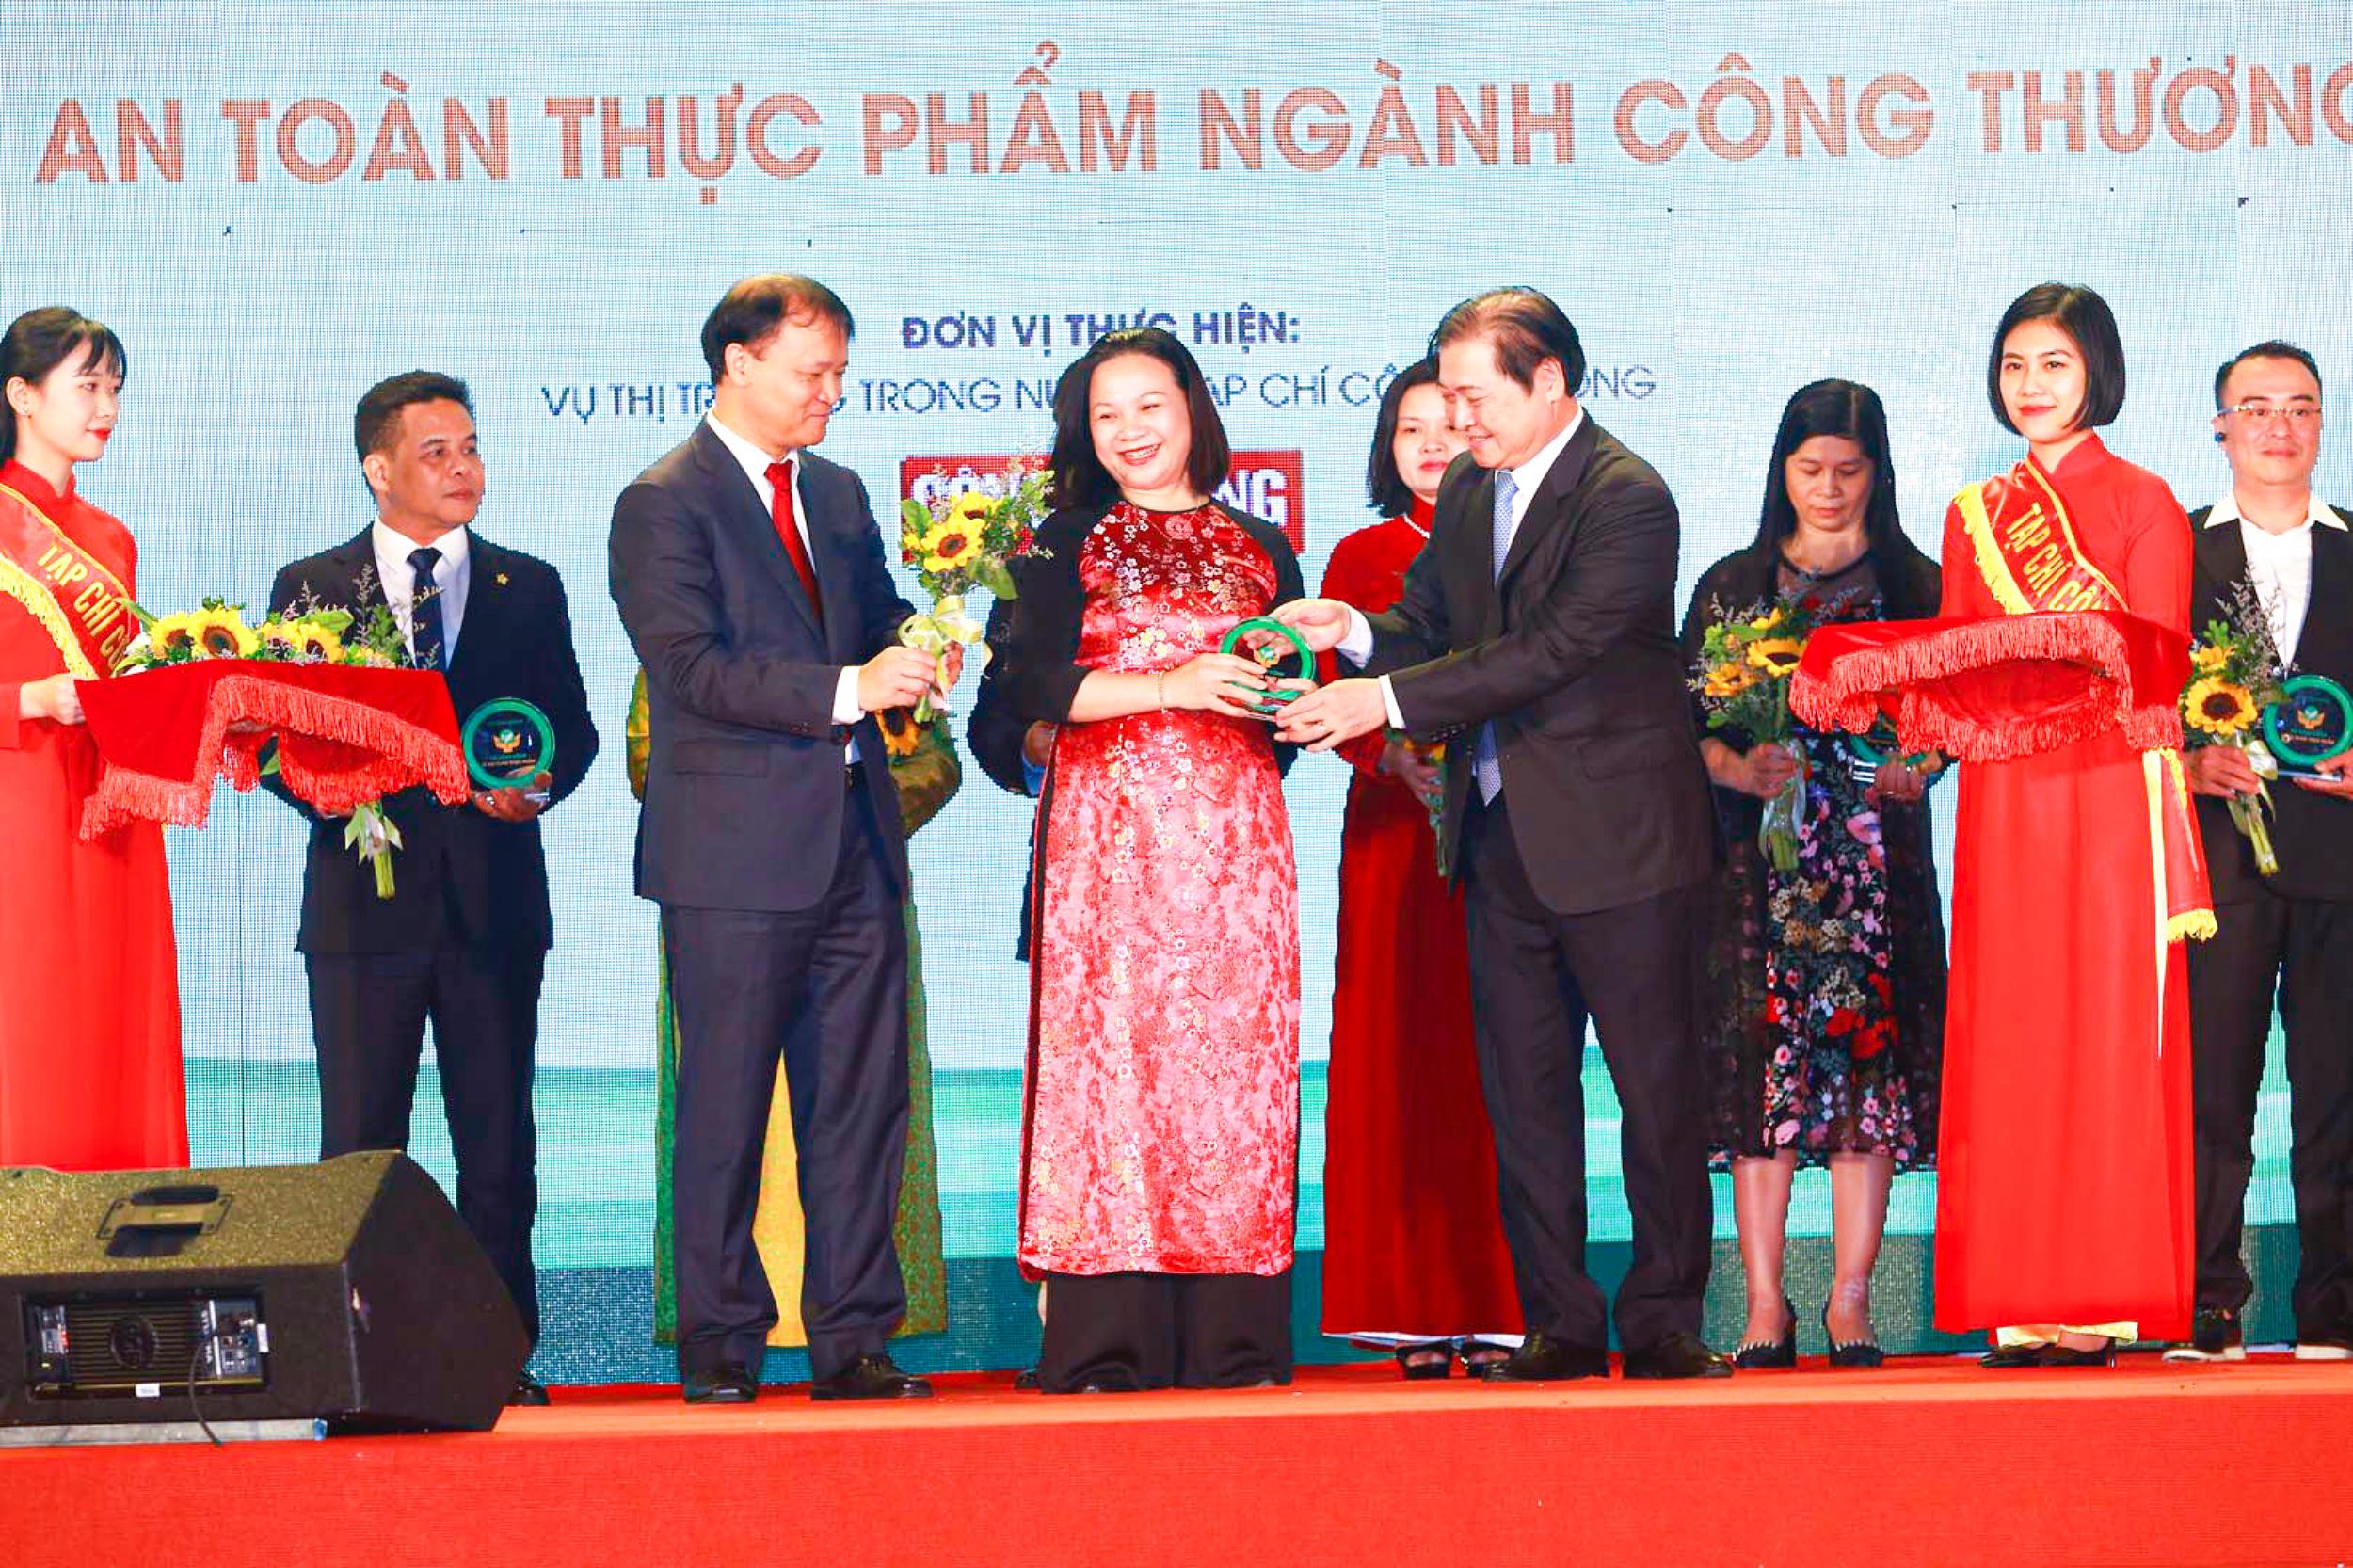 Đại diện Saigon Co.op nhận kỷ niệm chương Hành động vì an toàn thực phẩm